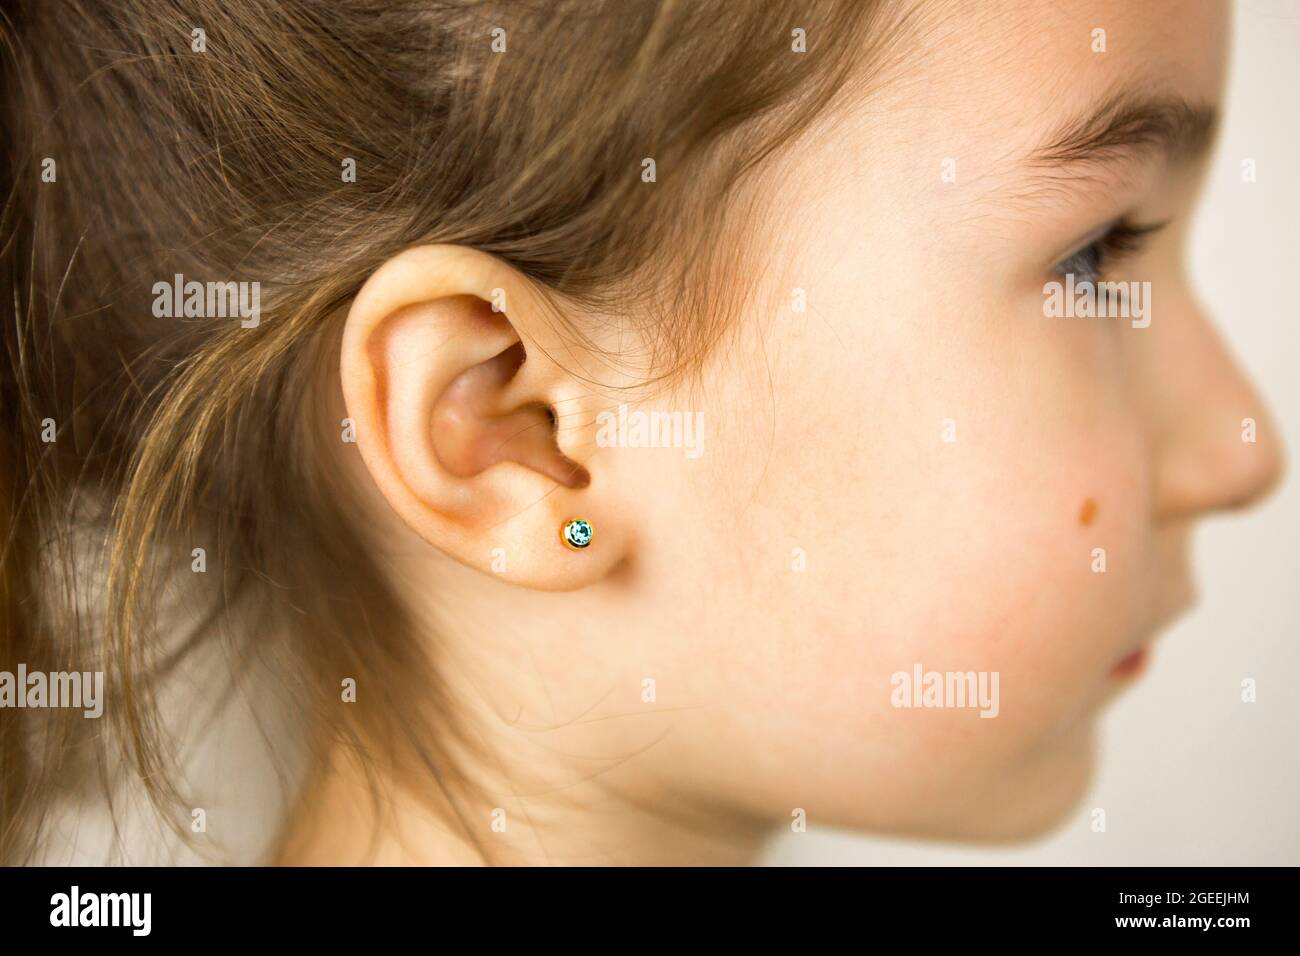 Ohrpiercing bei einem Kind - ein Mädchen zeigt einen Ohrring in ihrem Ohr aus einer medizinischen Legierung. Weißer Hintergrund, Porträt eines Mädchens mit einem Maulwurf auf der Wange Stockfoto